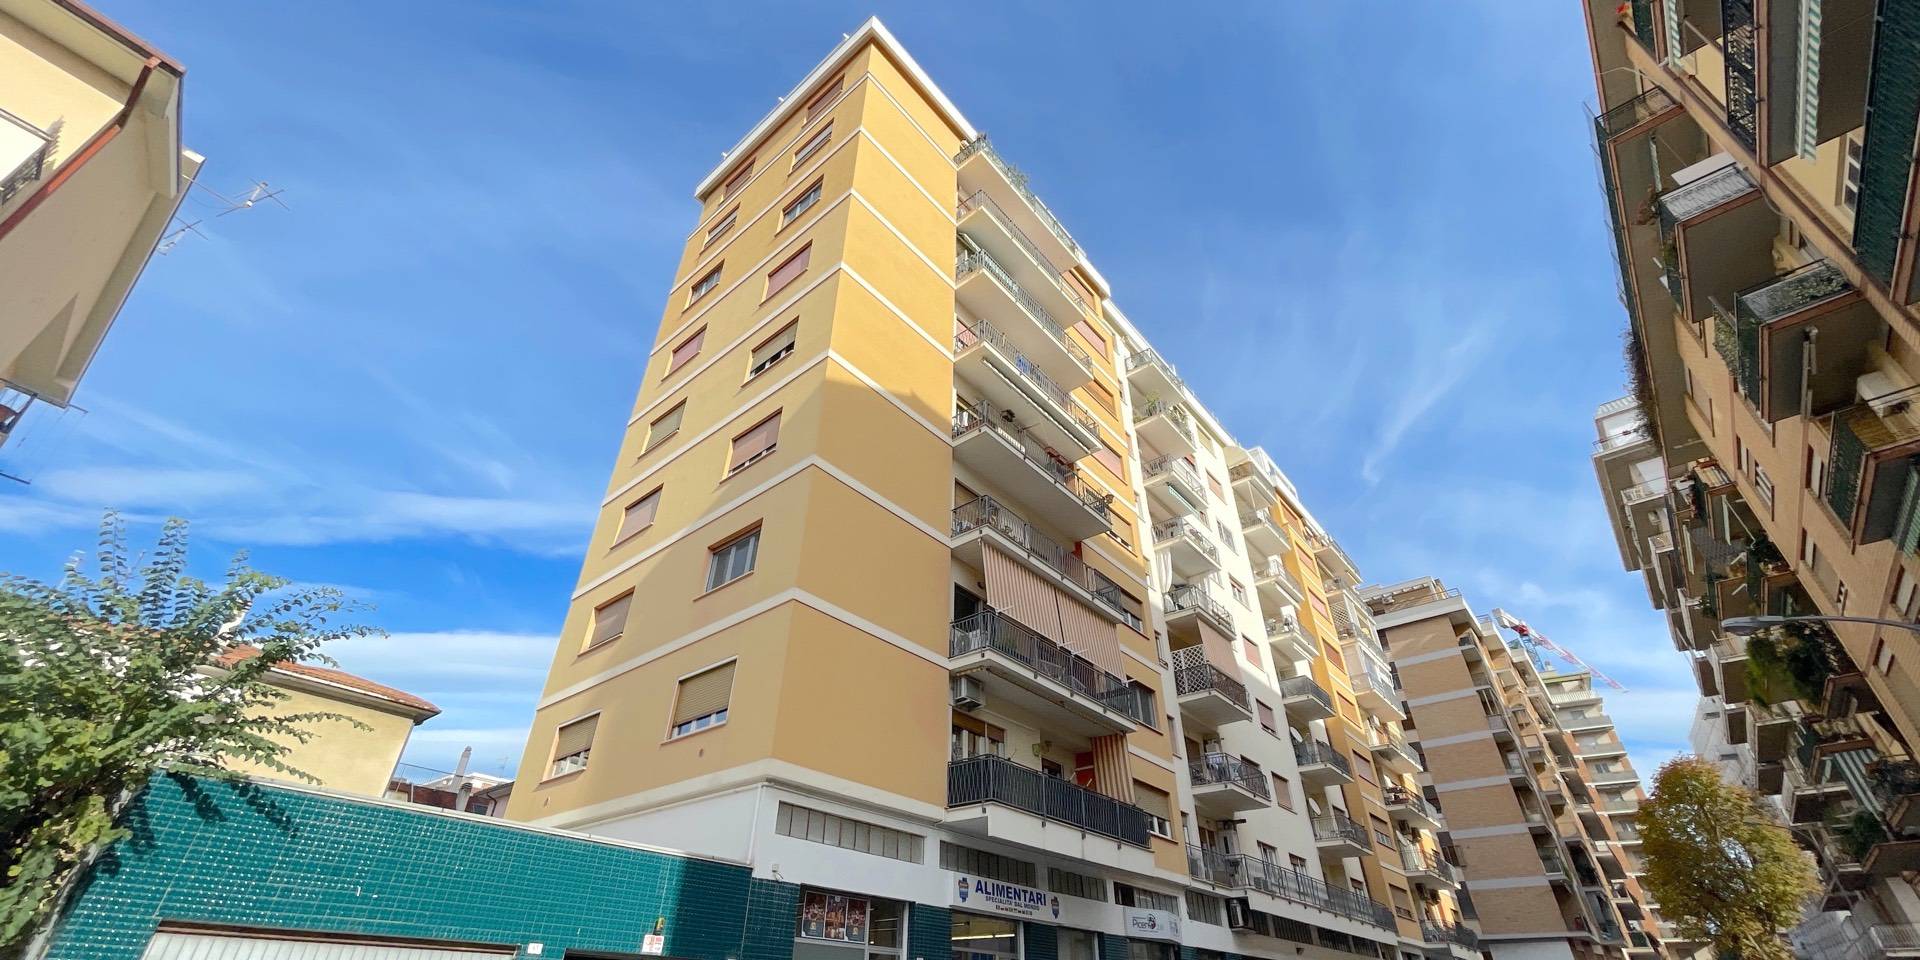 Appartamento in vendita a San Benedetto del Tronto, 6 locali, zona Località: ResidenzialeSud, prezzo € 289.000 | PortaleAgenzieImmobiliari.it